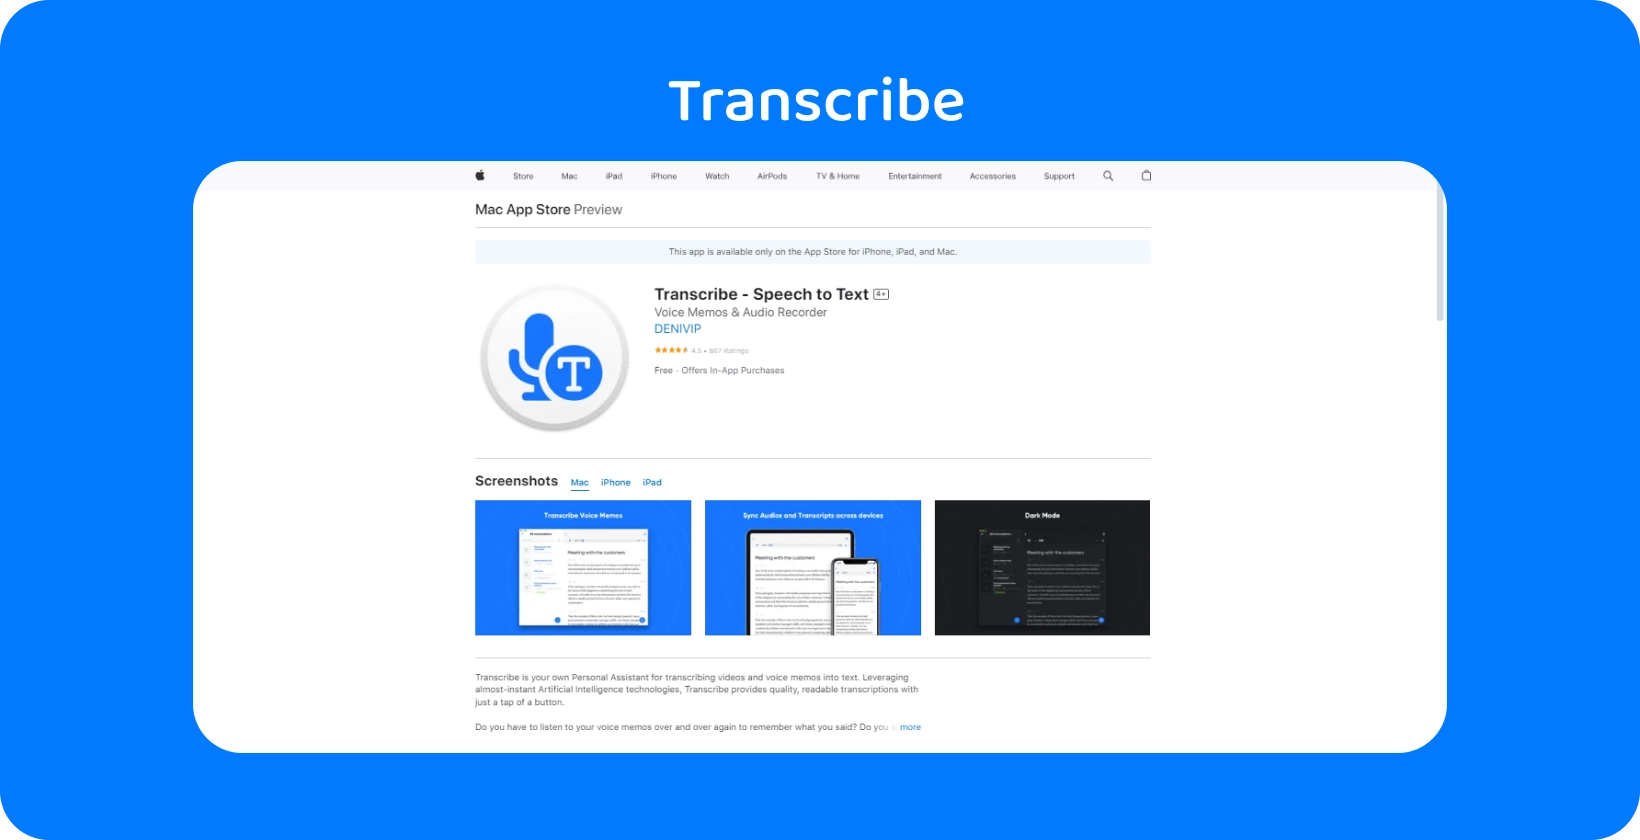 Екранна снимка на приложението Transcribe на Mac App Store, подчертавайки възможностите му за реч в текст.